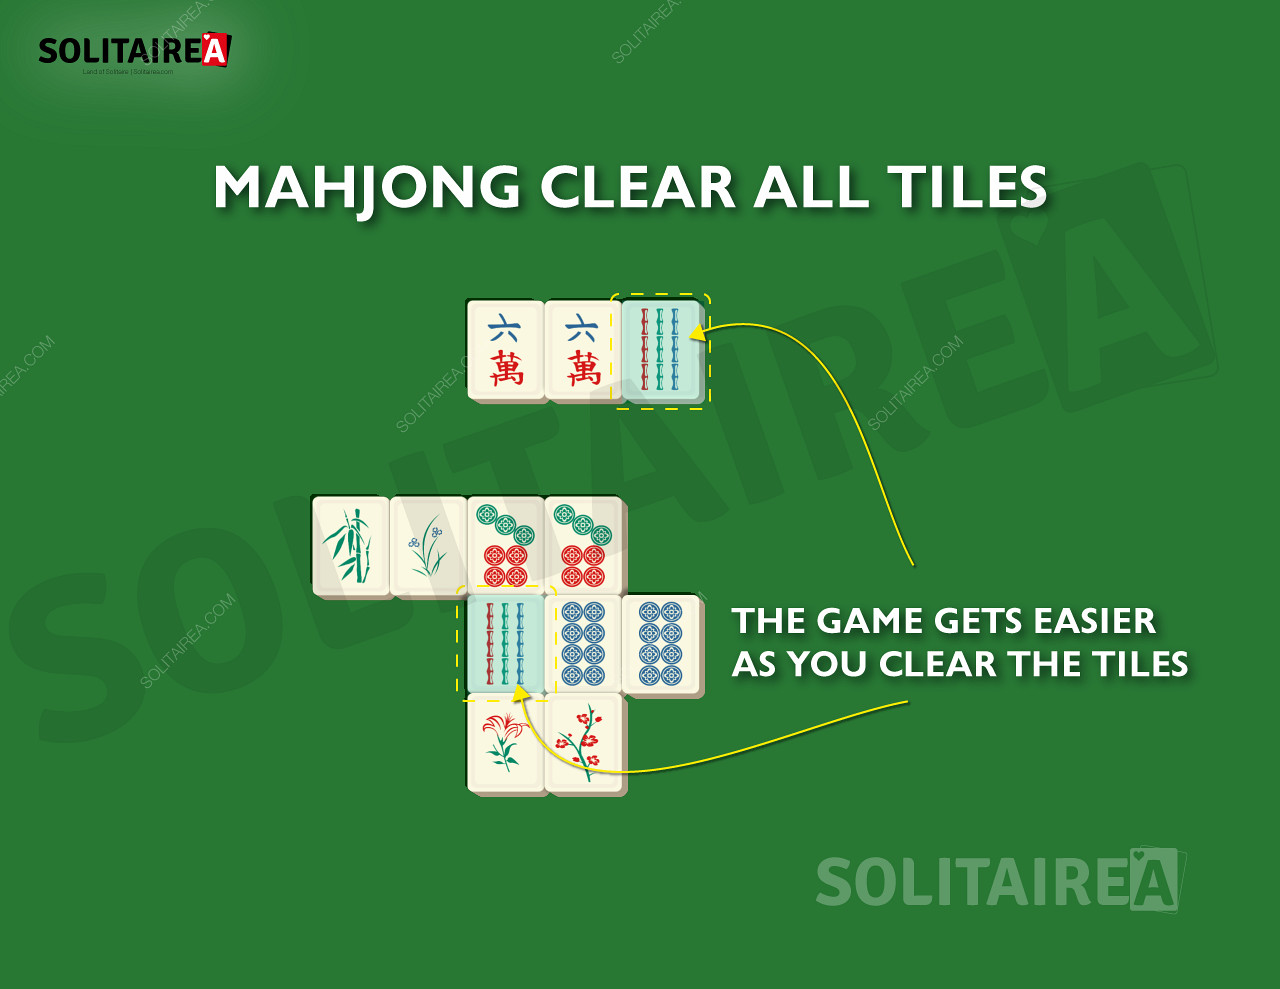 Etter hvert som du gjør fremskritt, blir det færre brikker igjen å rydde i Mahjong Solitaire.